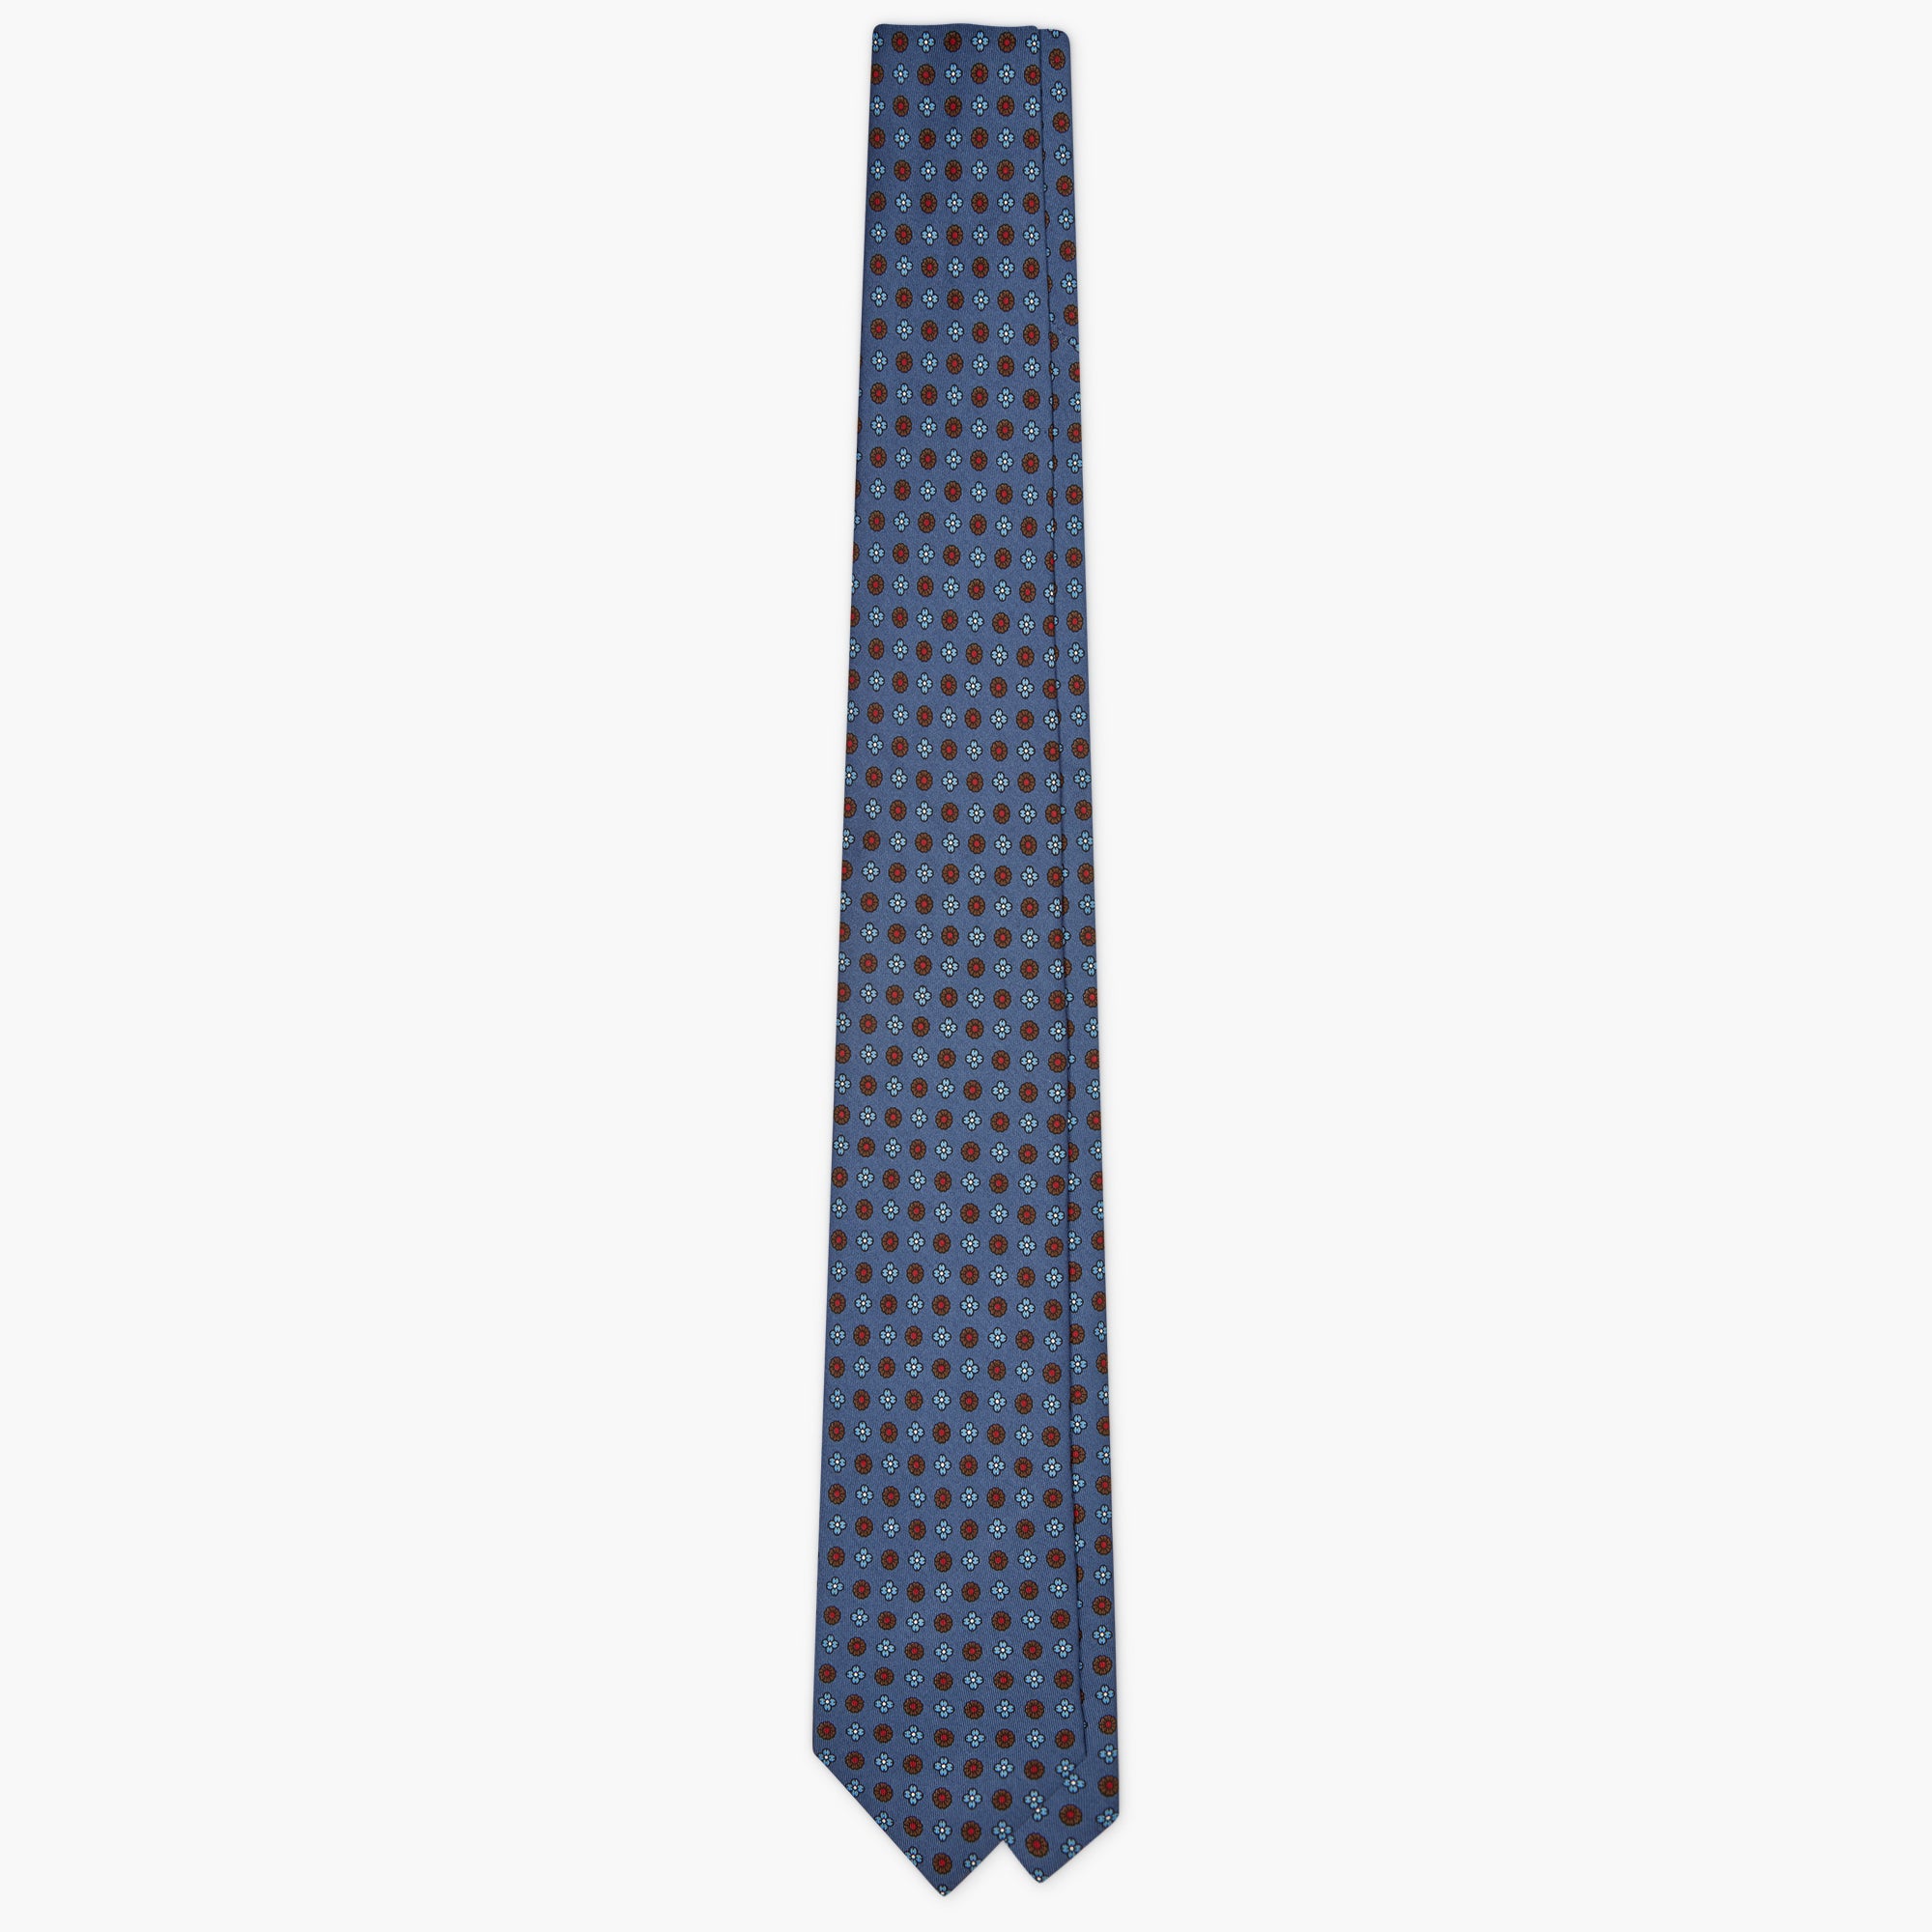 Cravatta 7 Pieghe In Seta Inglese Stampata Floreale - Blu Cobalto